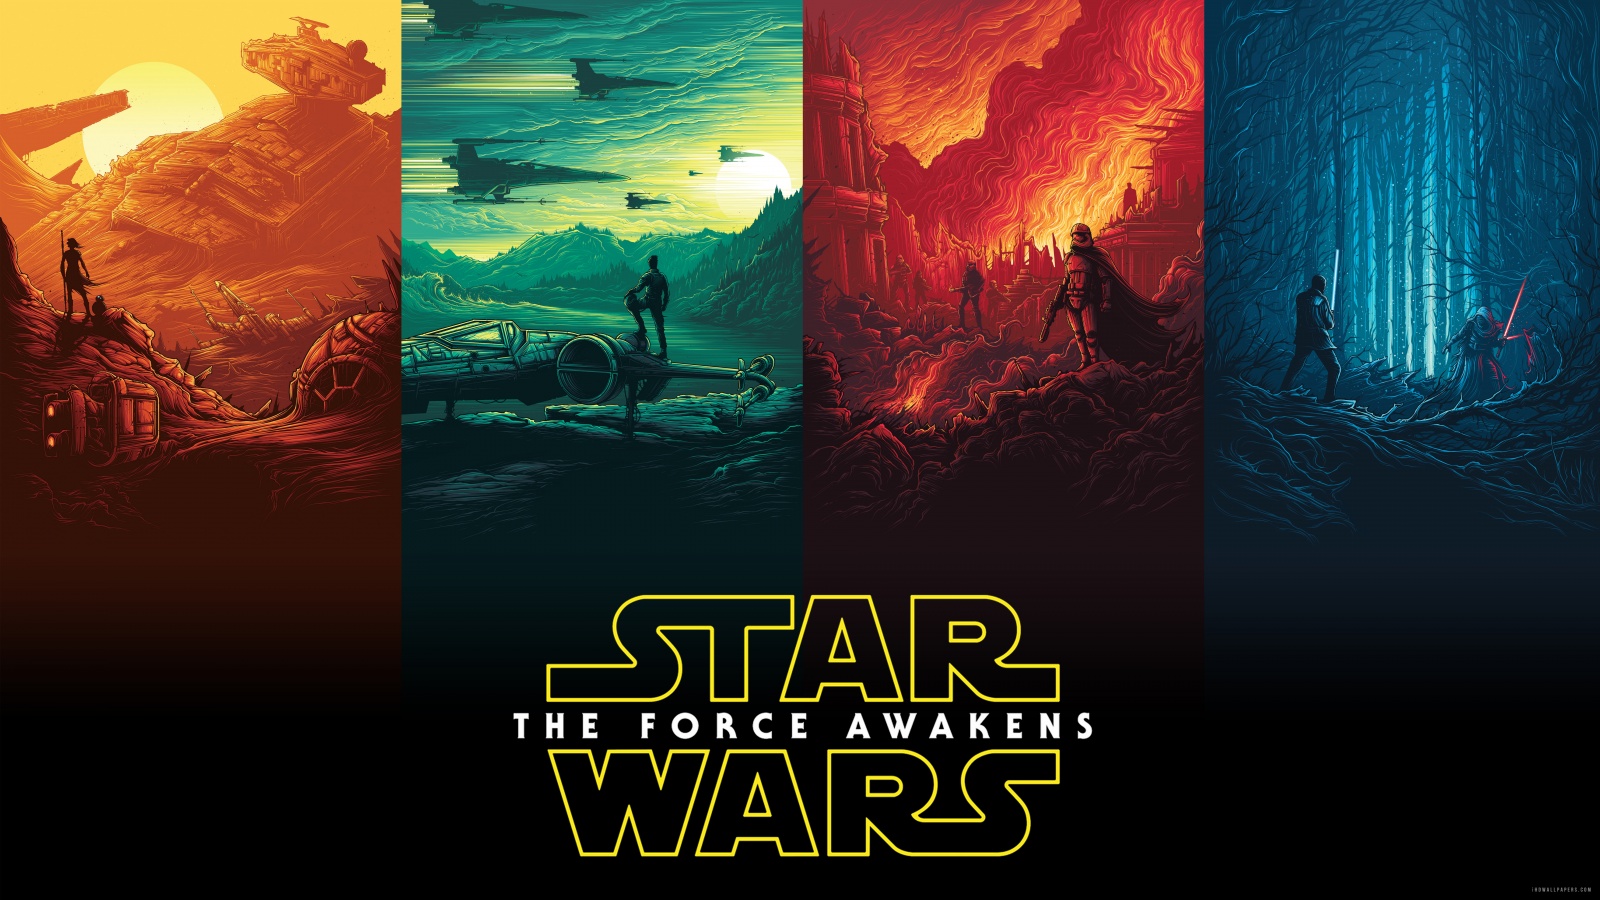 Star Wars Rey Finn Kylo Ren Han Solo Luke Skywalker HD Wallpaper IHD